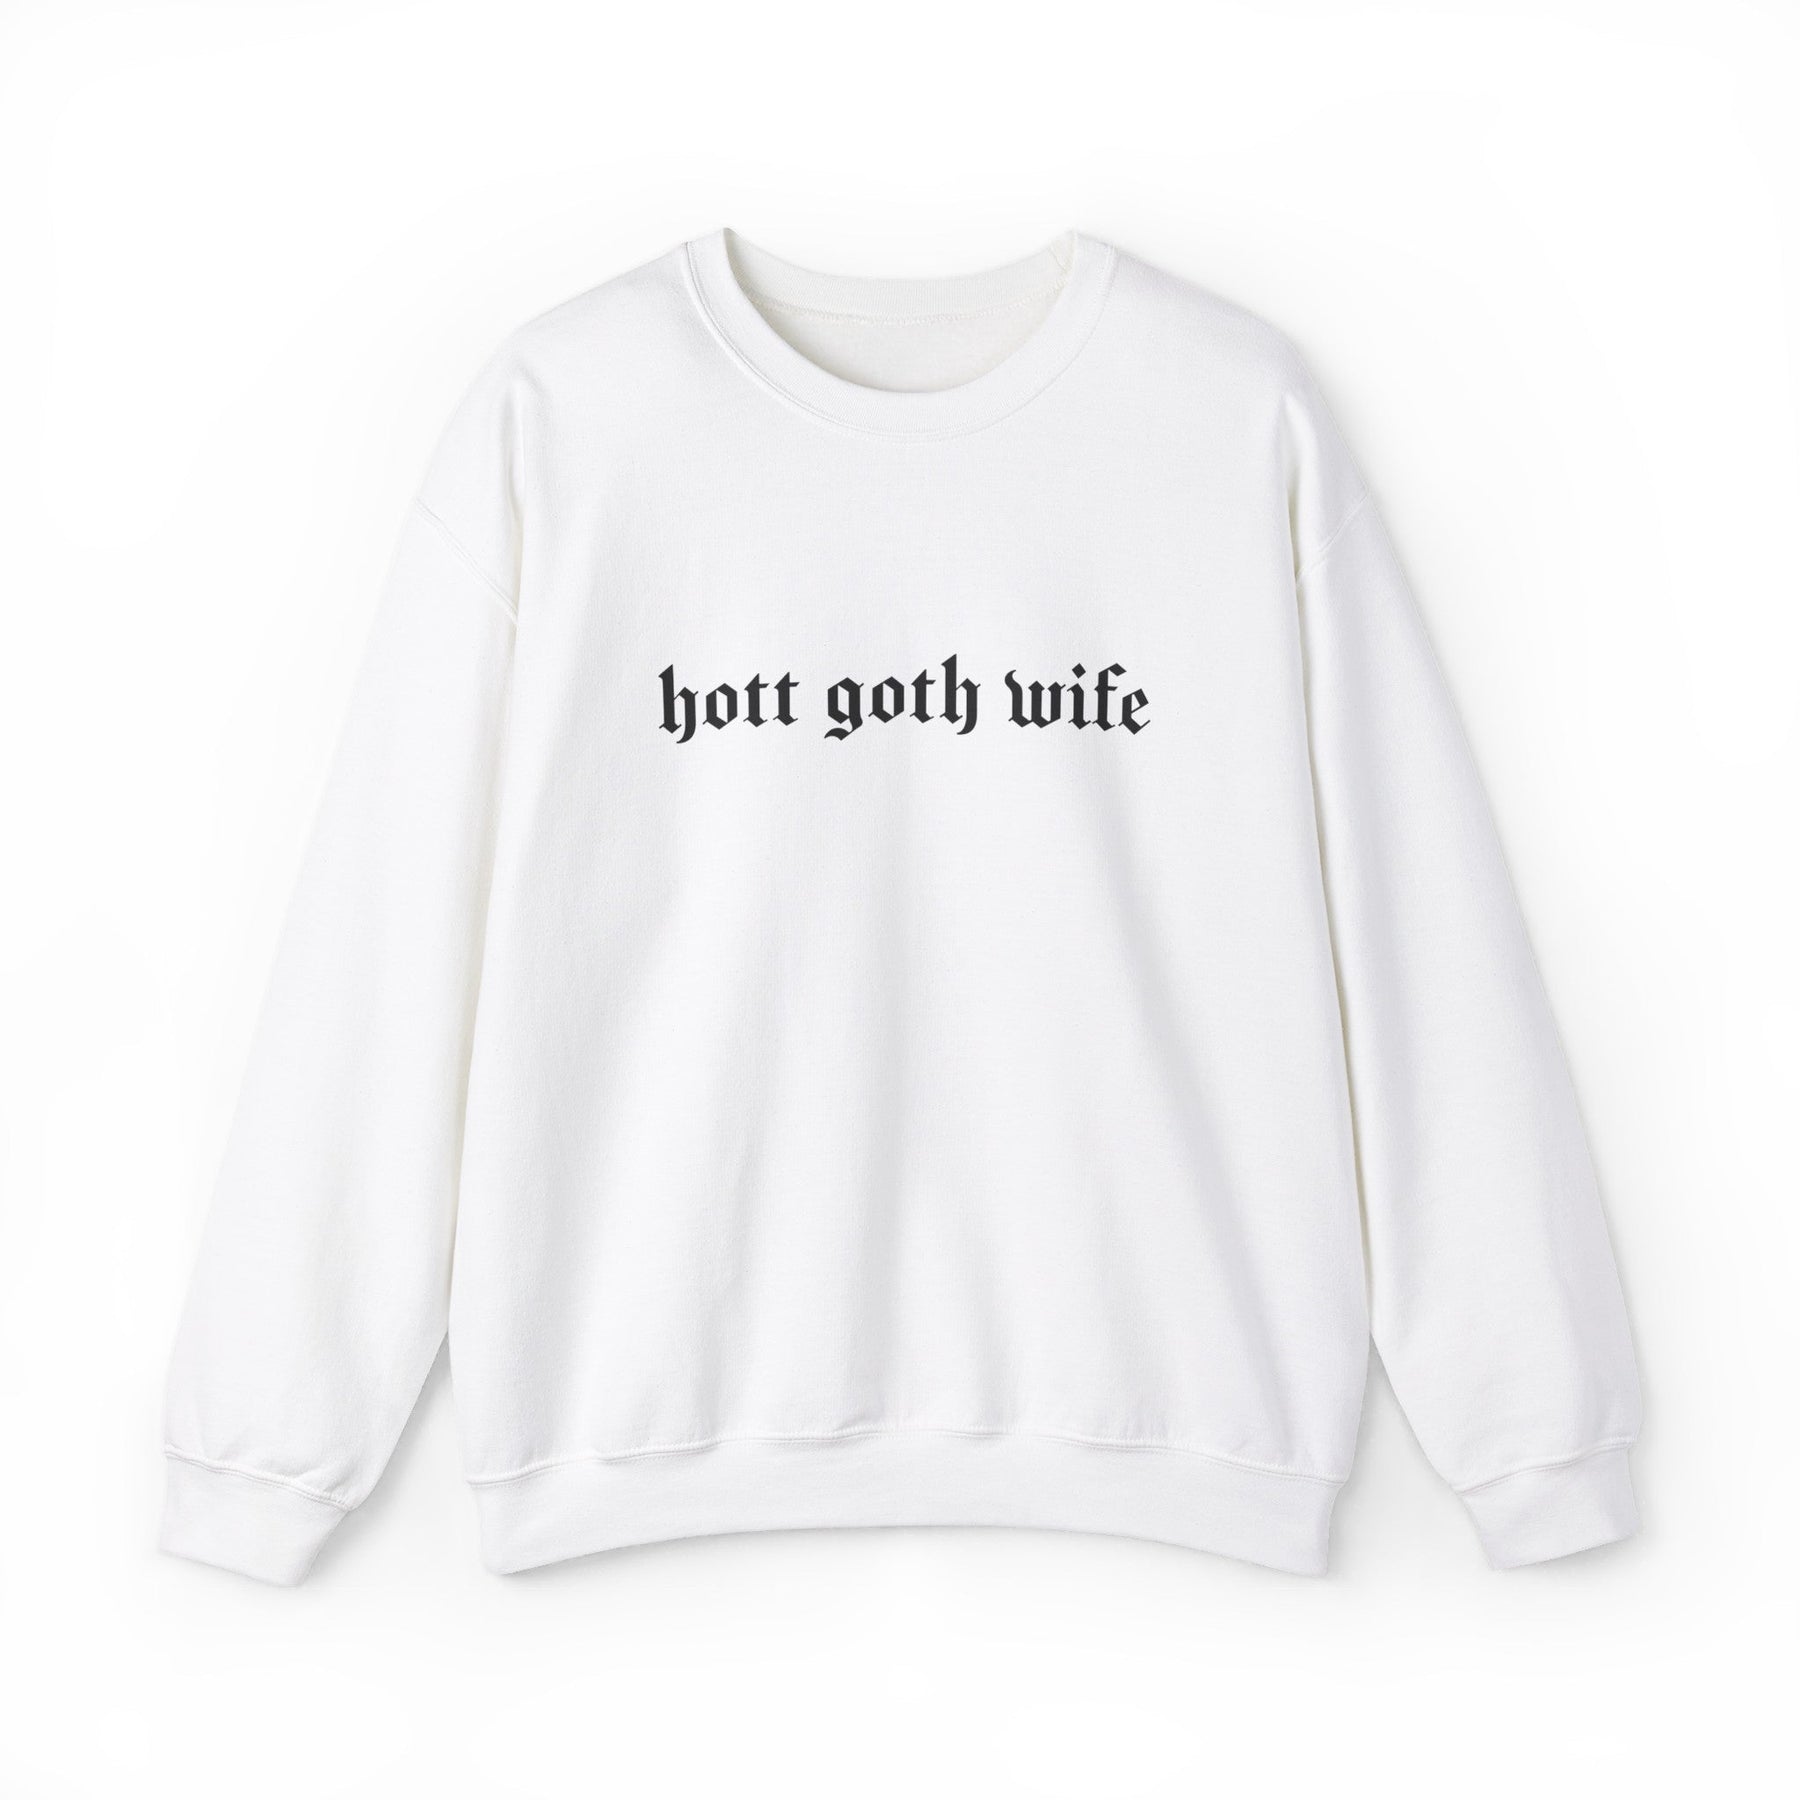 Hott Goth Wife Long Sleeve Crew Neck Sweatshirt - Goth Cloth Co.Sweatshirt13511796118545671777